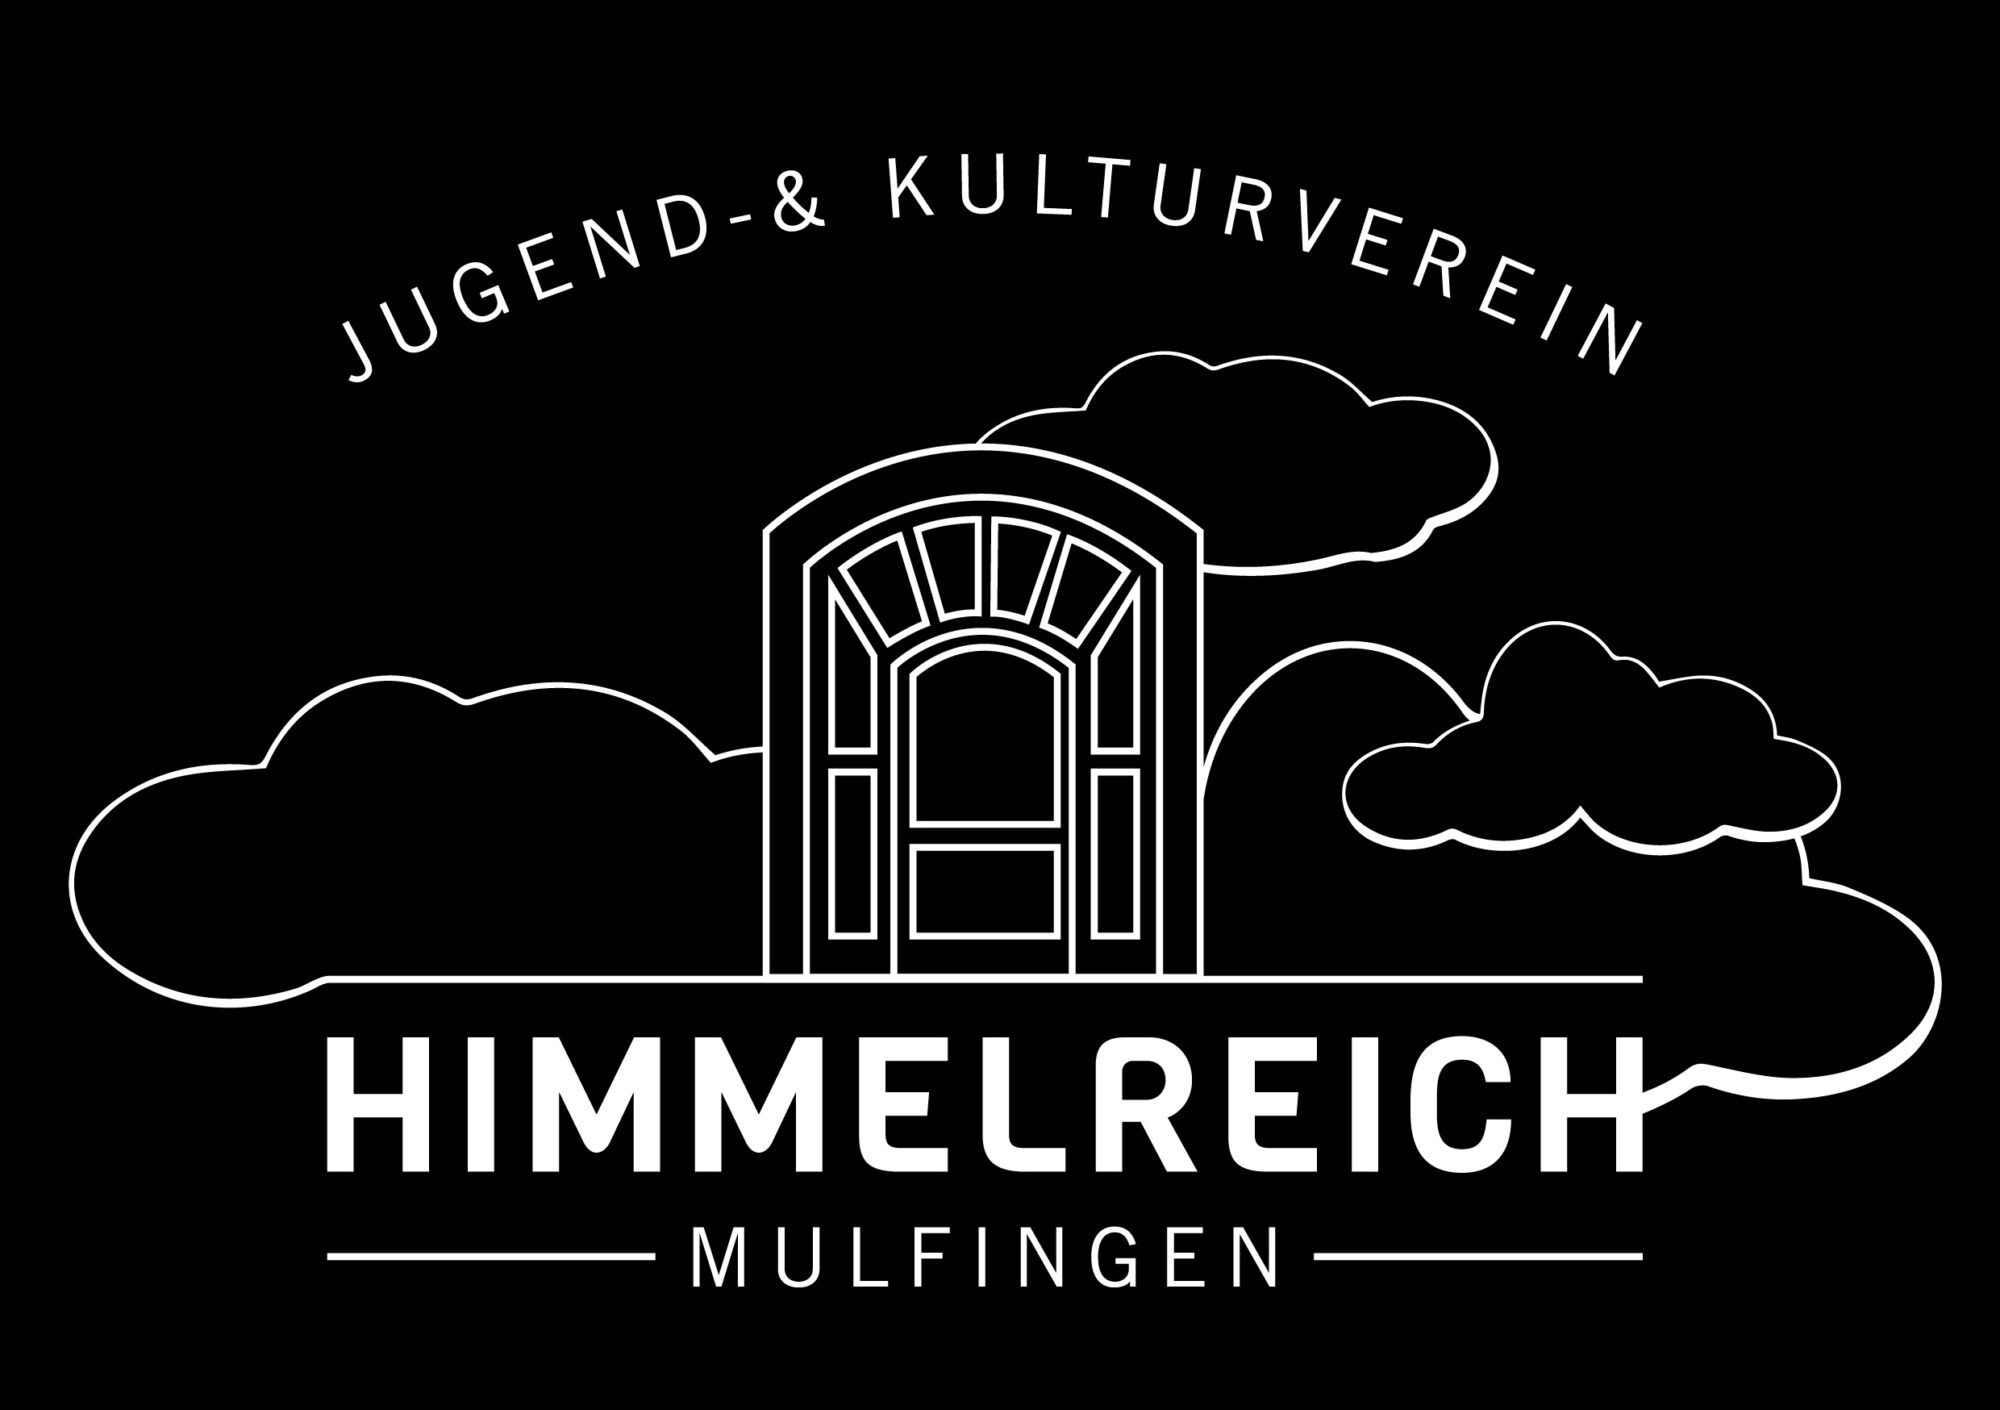 (c) Himmelreich-mulfingen.de